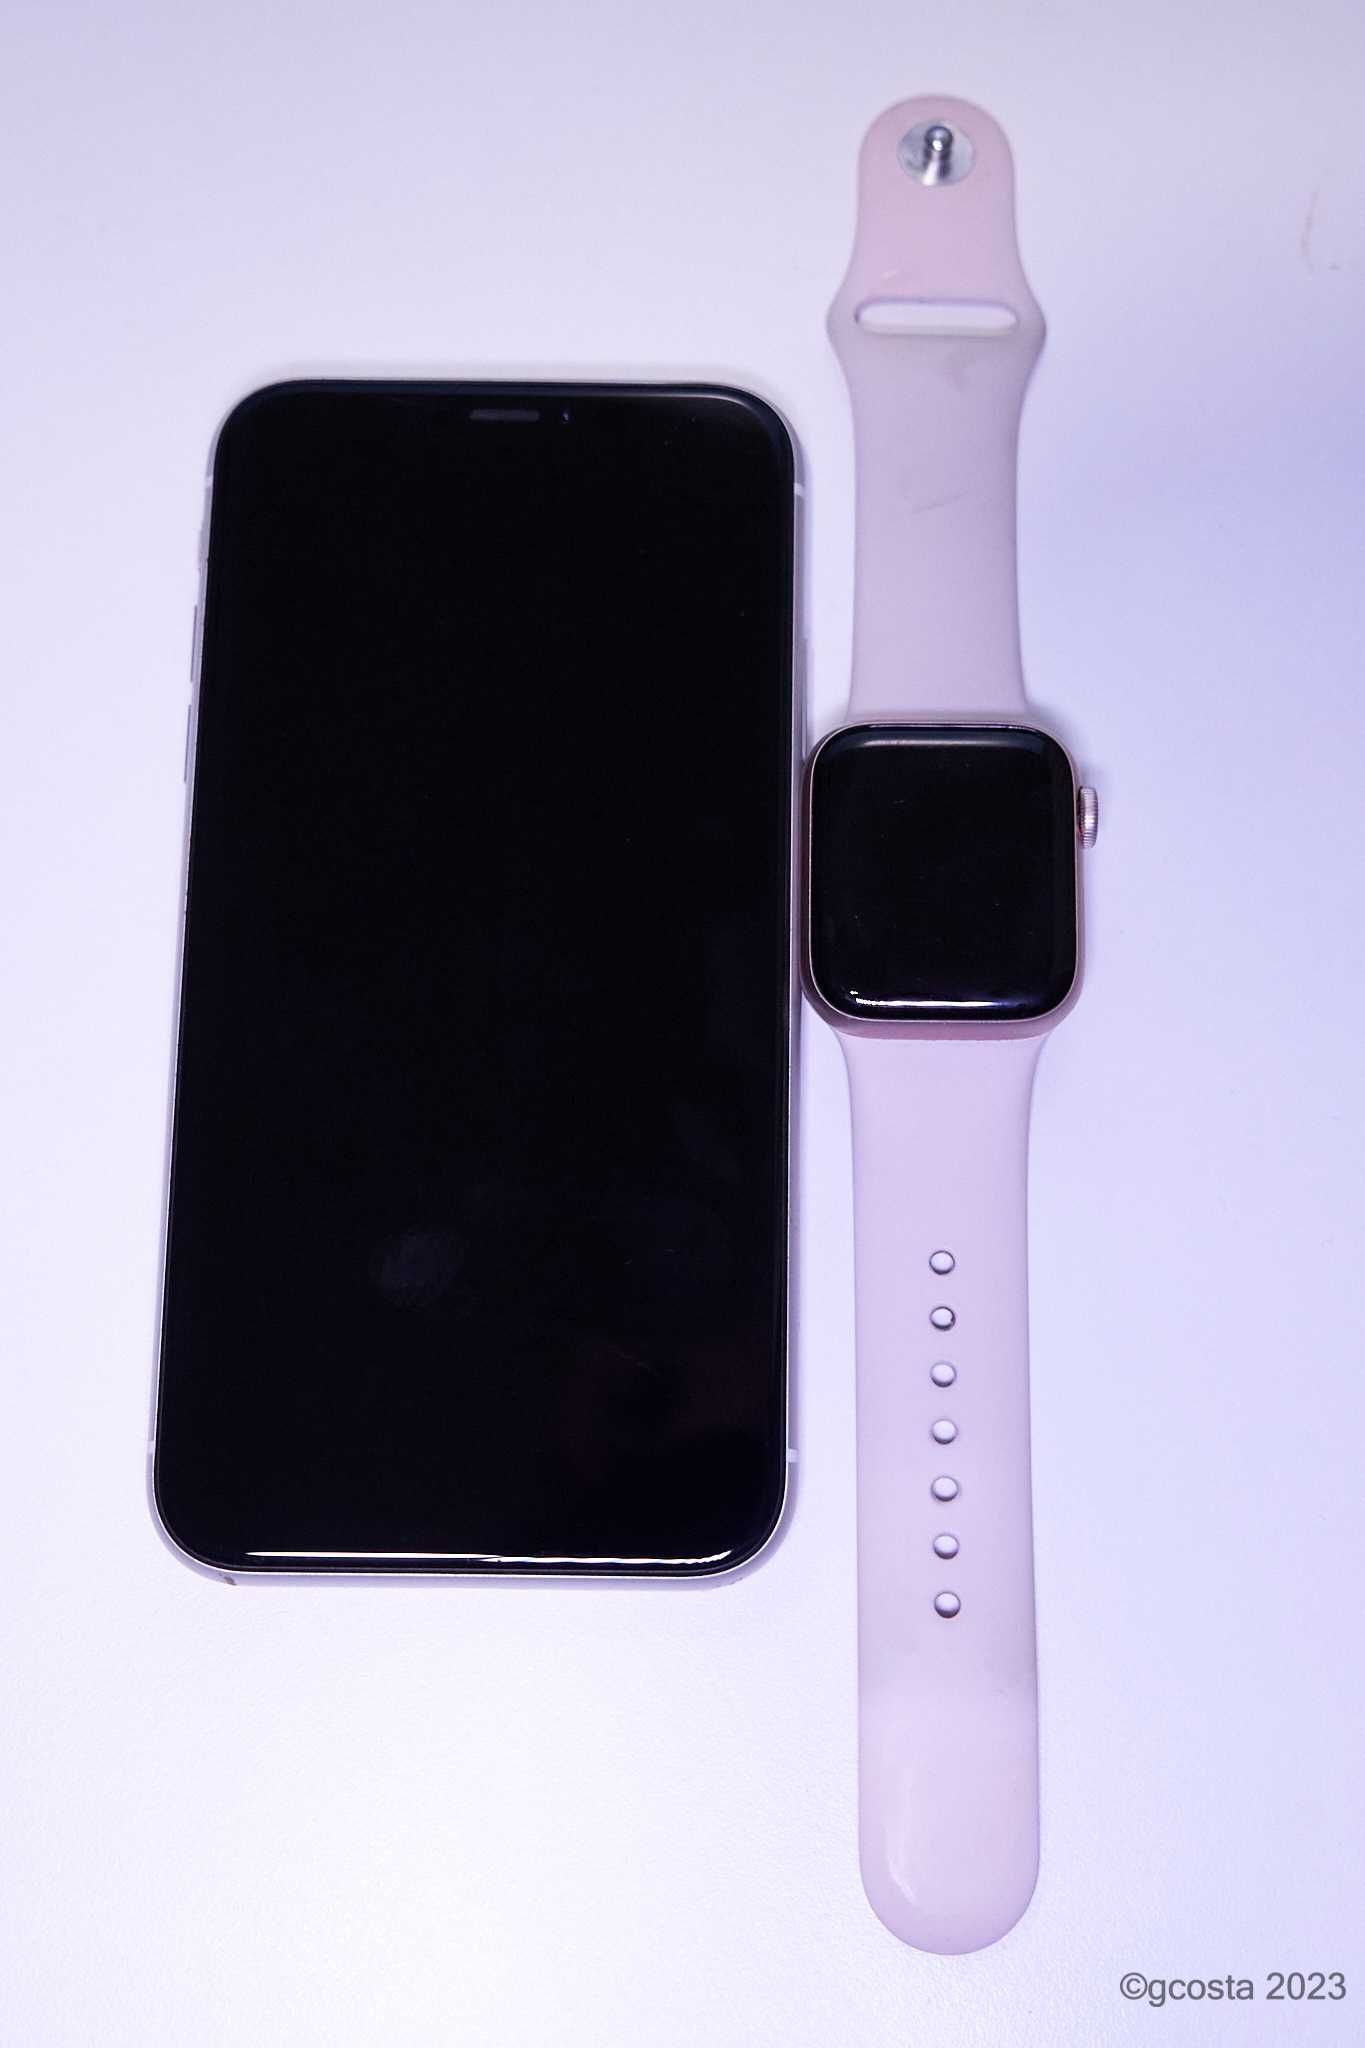 ultima oportunidade: Iphone XR 128gb + Apple Watch 4, sem riscos